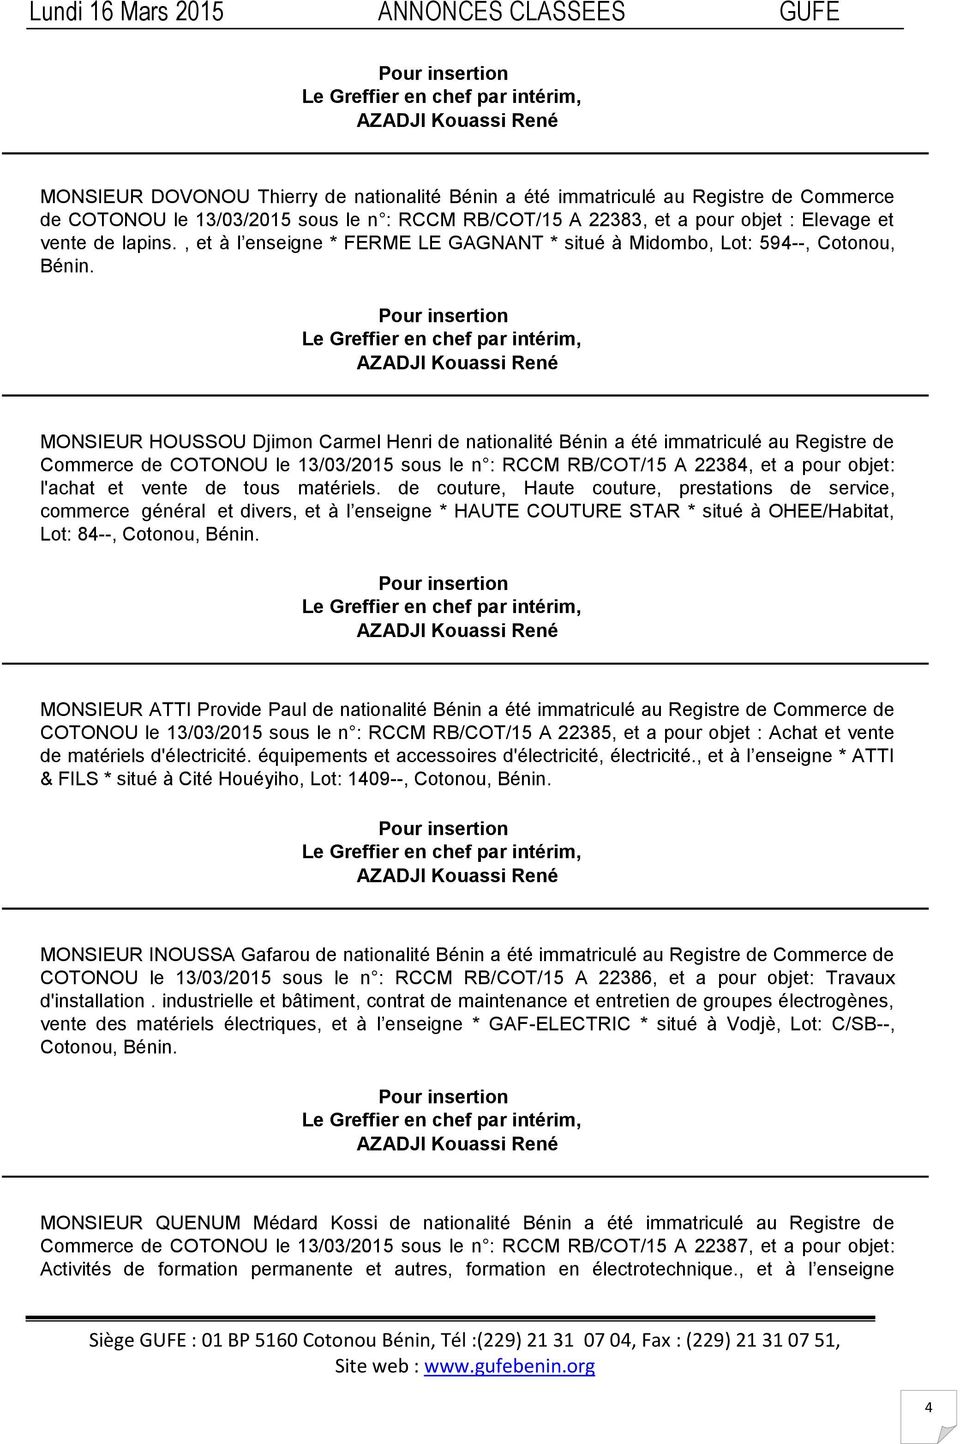 MONSIEUR HOUSSOU Djimon Carmel Henri de nationalité Bénin a été immatriculé au Registre de Commerce de COTONOU le 13/03/2015 sous le n : RCCM RB/COT/15 A 22384, et a pour objet: l'achat et vente de